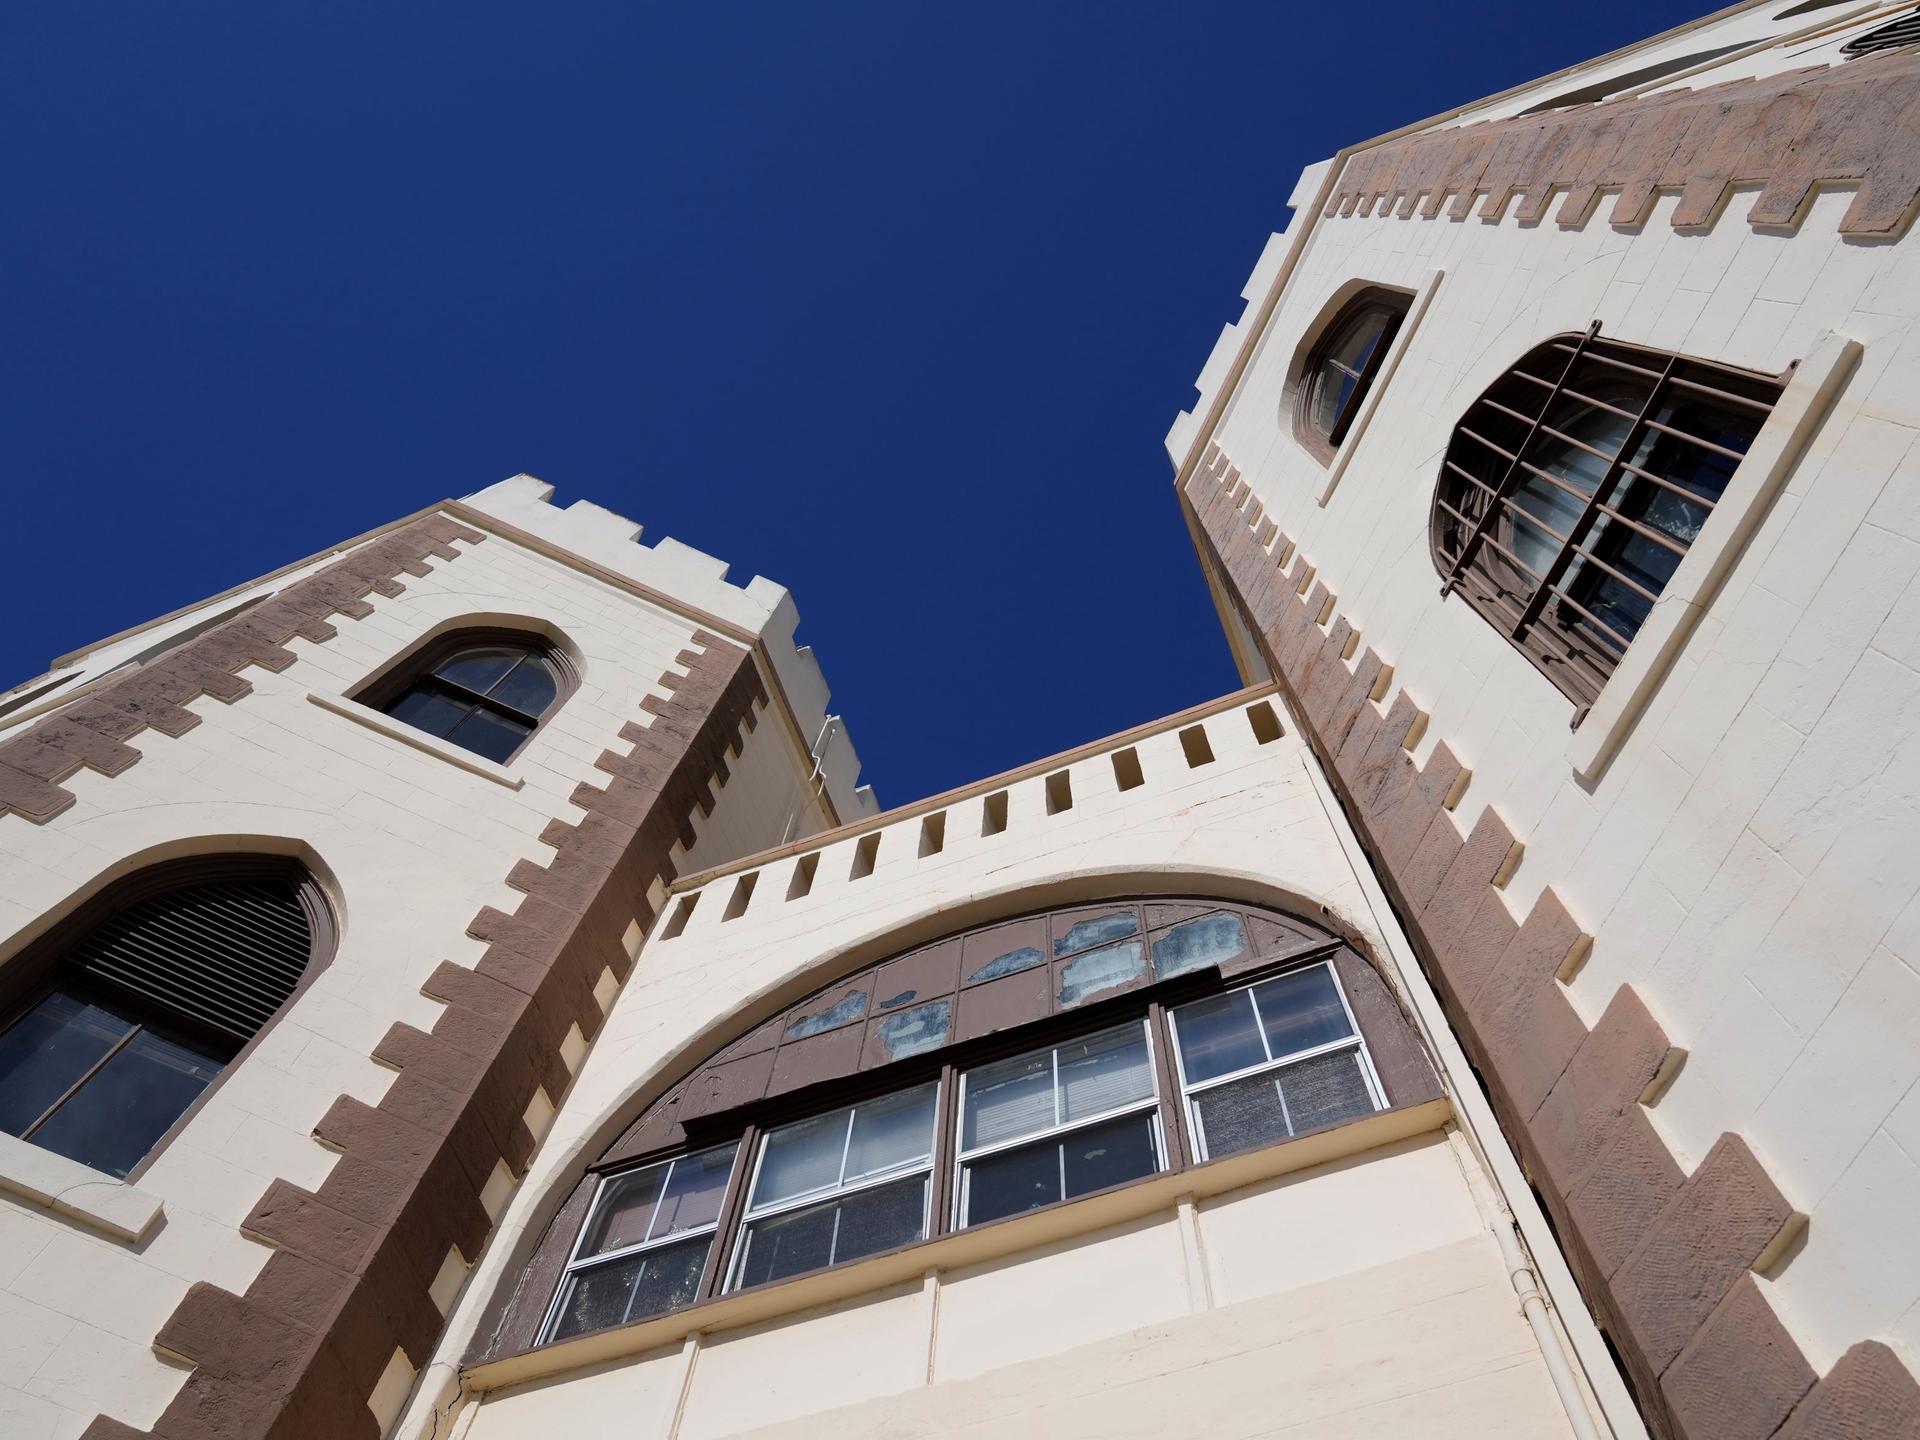 Blick auf die historischen Gebäudetürme von San Quentin, die sich in den blauen Himmel recken.